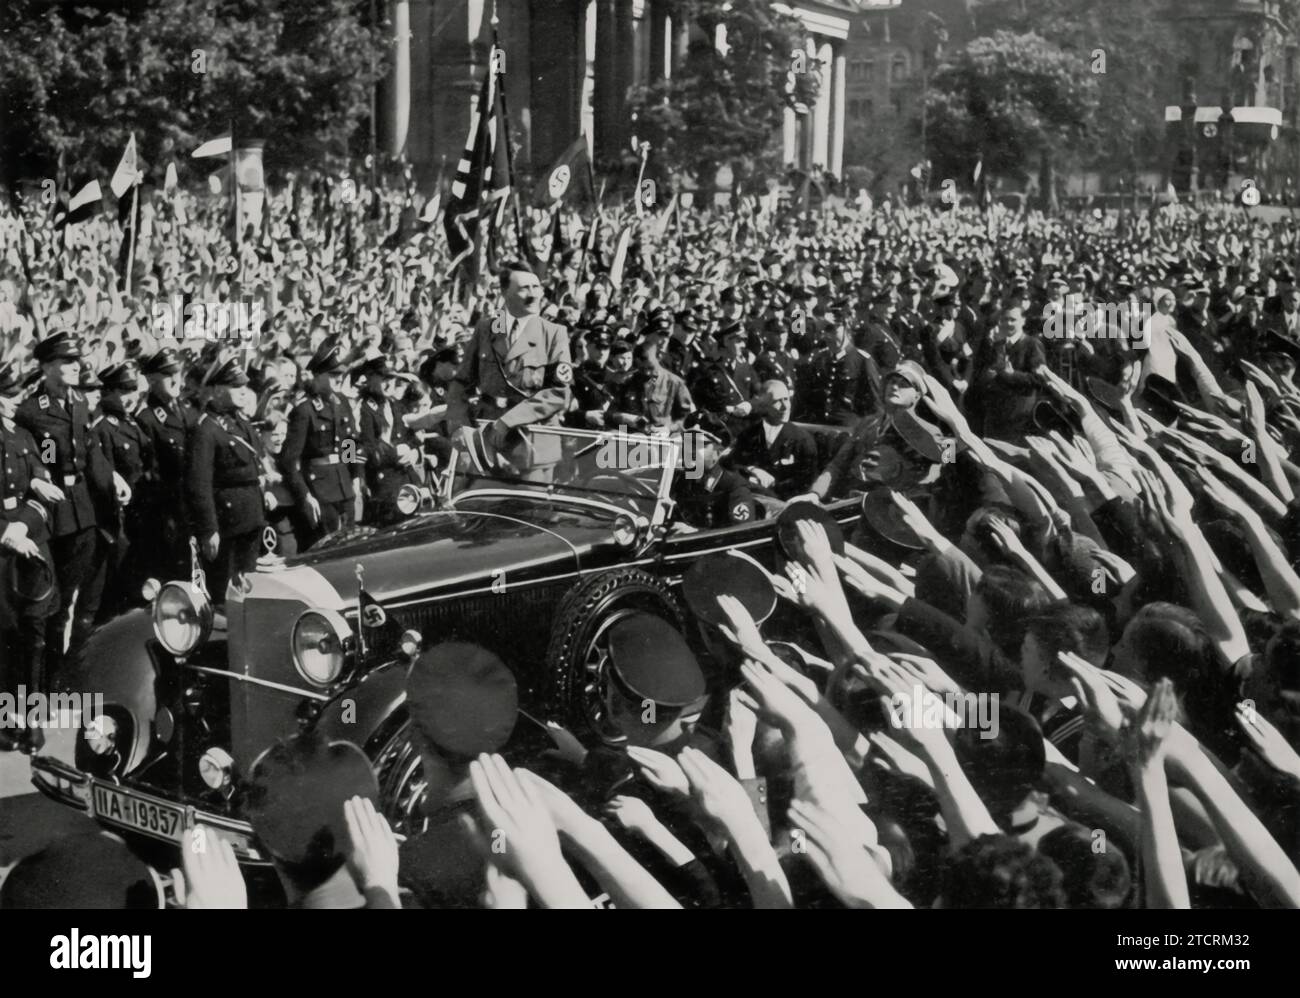 En el Día del Trabajo Nacional en 1934, después de dar un discurso significativo a los jóvenes en una manifestación en el Lustgarten de Berlín el 1 de mayo, Adolf Hitler se ve saliendo del evento. Esta ocasión fue parte de las celebraciones y celebraciones que marcaron el Día del Trabajo Nacional, un día que el régimen nazi utilizó para promover sus ideales sobre el trabajo y la comunidad nacional. El discurso de Hitler a la juventud, un público objetivo clave para la propaganda nazi, fue significativo para inculcar los valores e ideologías del régimen. Foto de stock